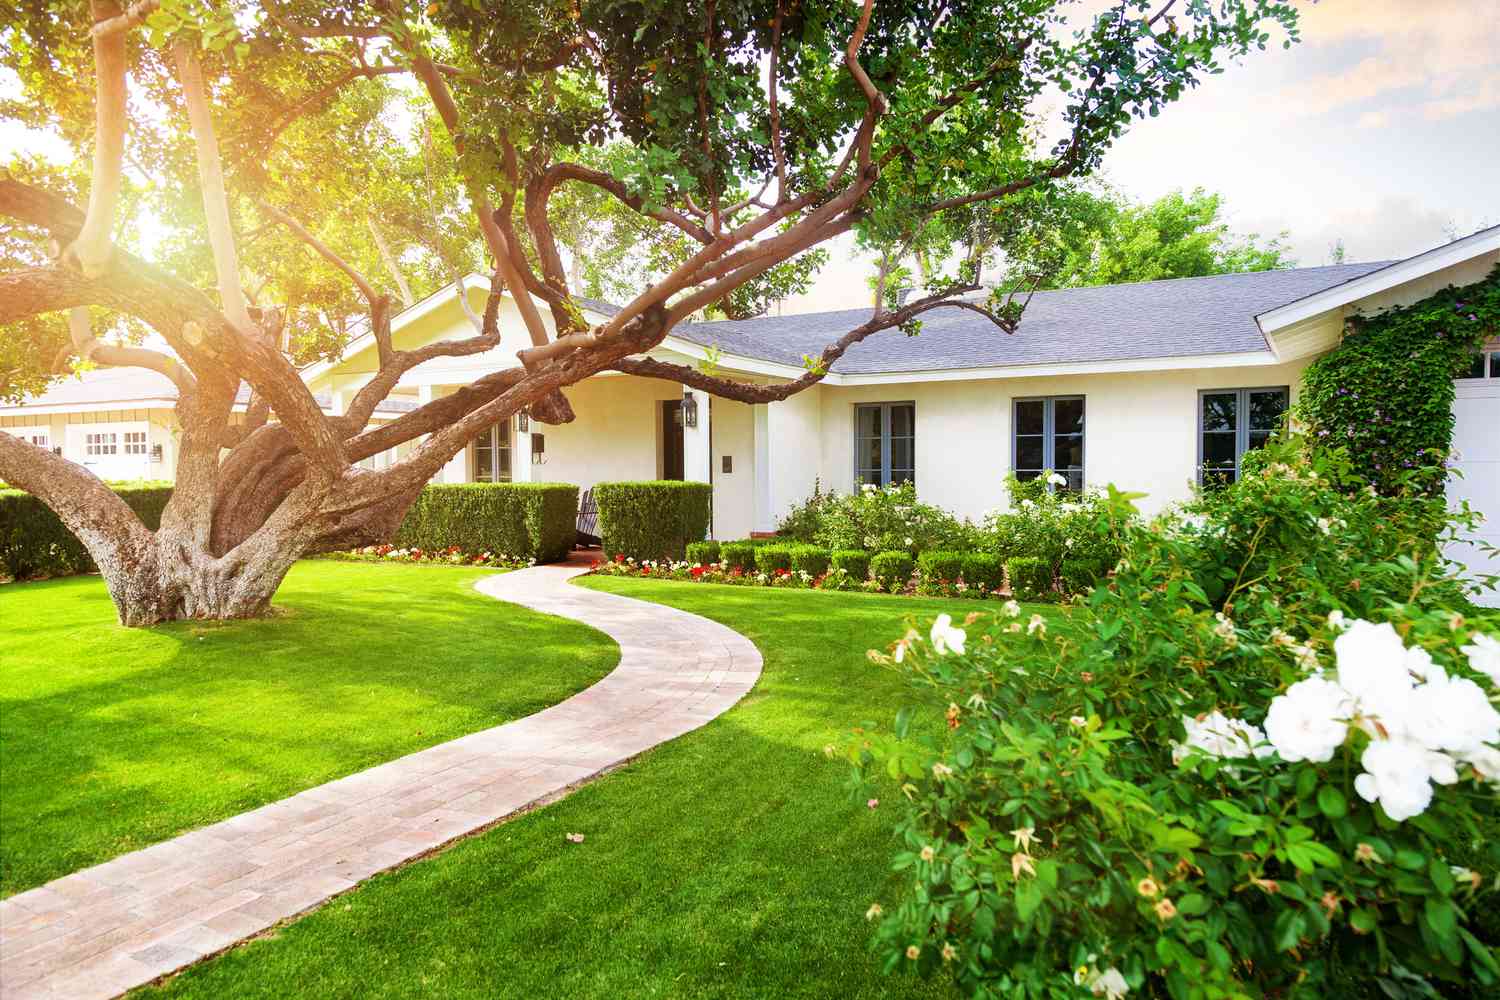 Ein weißes Haus im Ranch-Stil mit grünem Gras, einem großen tief hängenden Baum und blühenden Sträuchern.